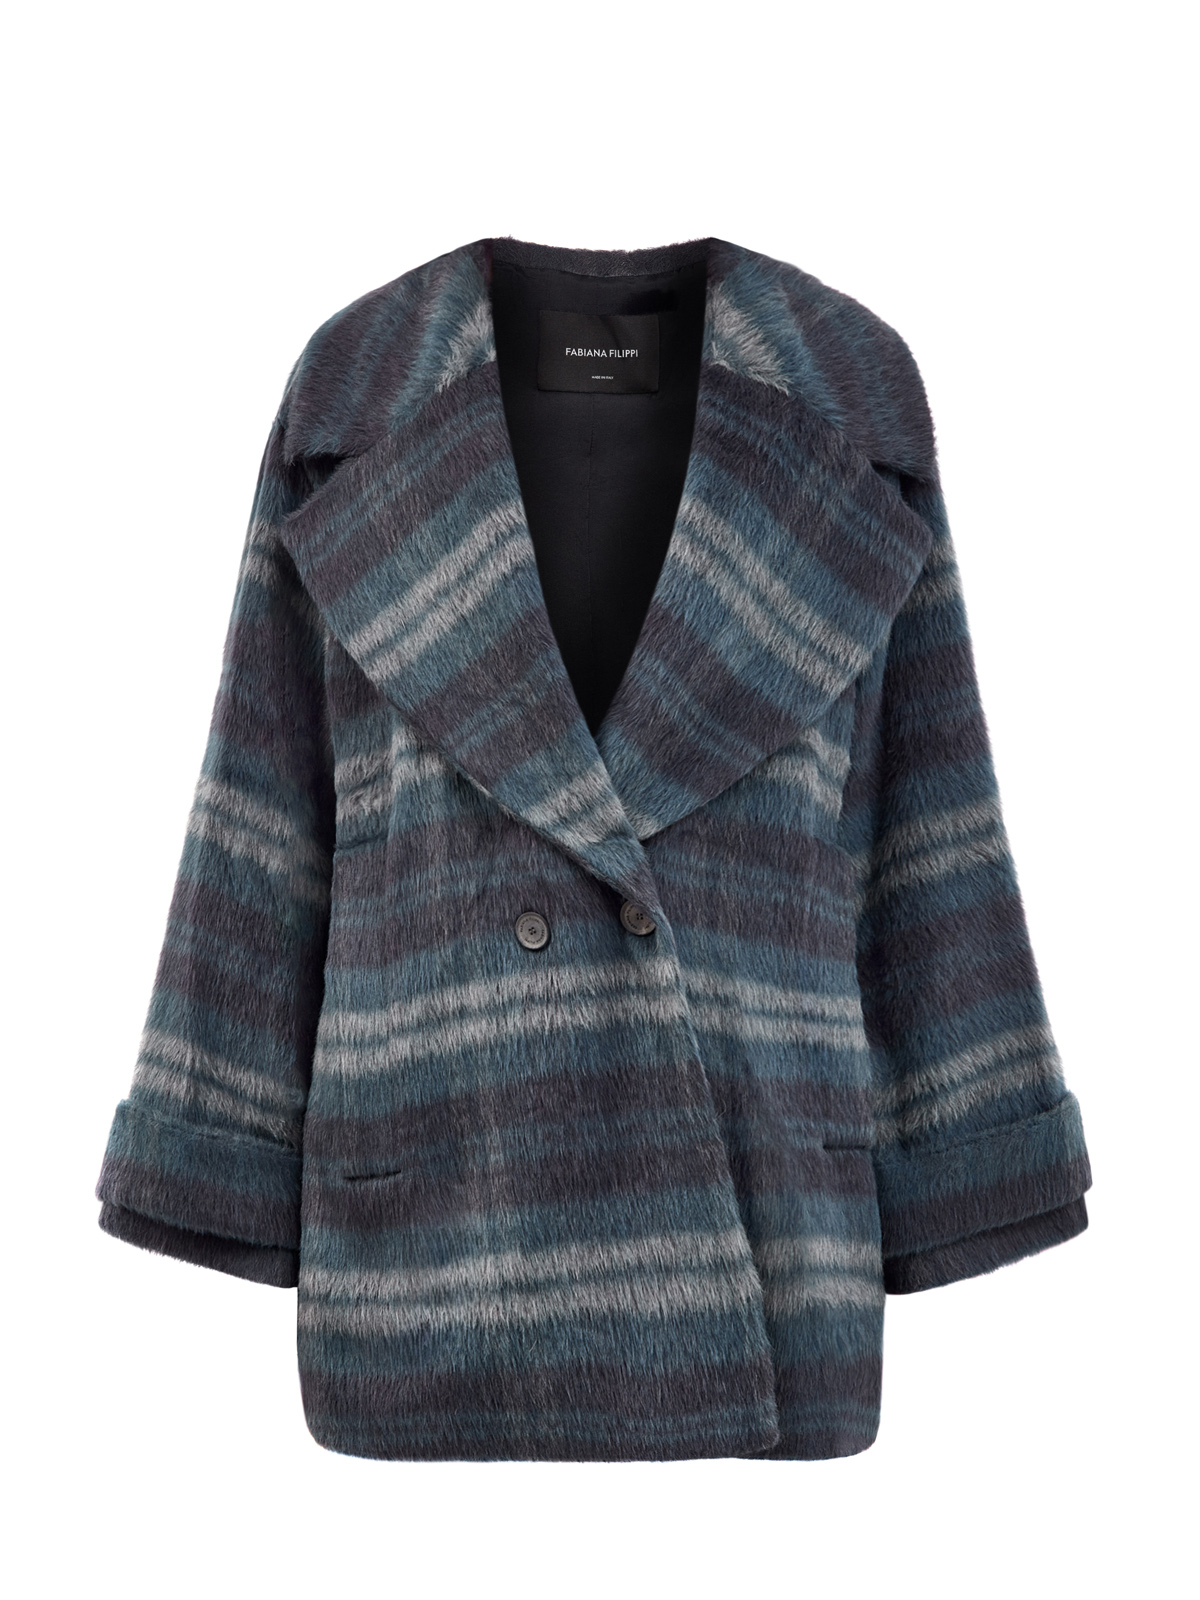 Объемное двубортное пальто-oversize из шерсти альпака в полоску FABIANA FILIPPI синего цвета